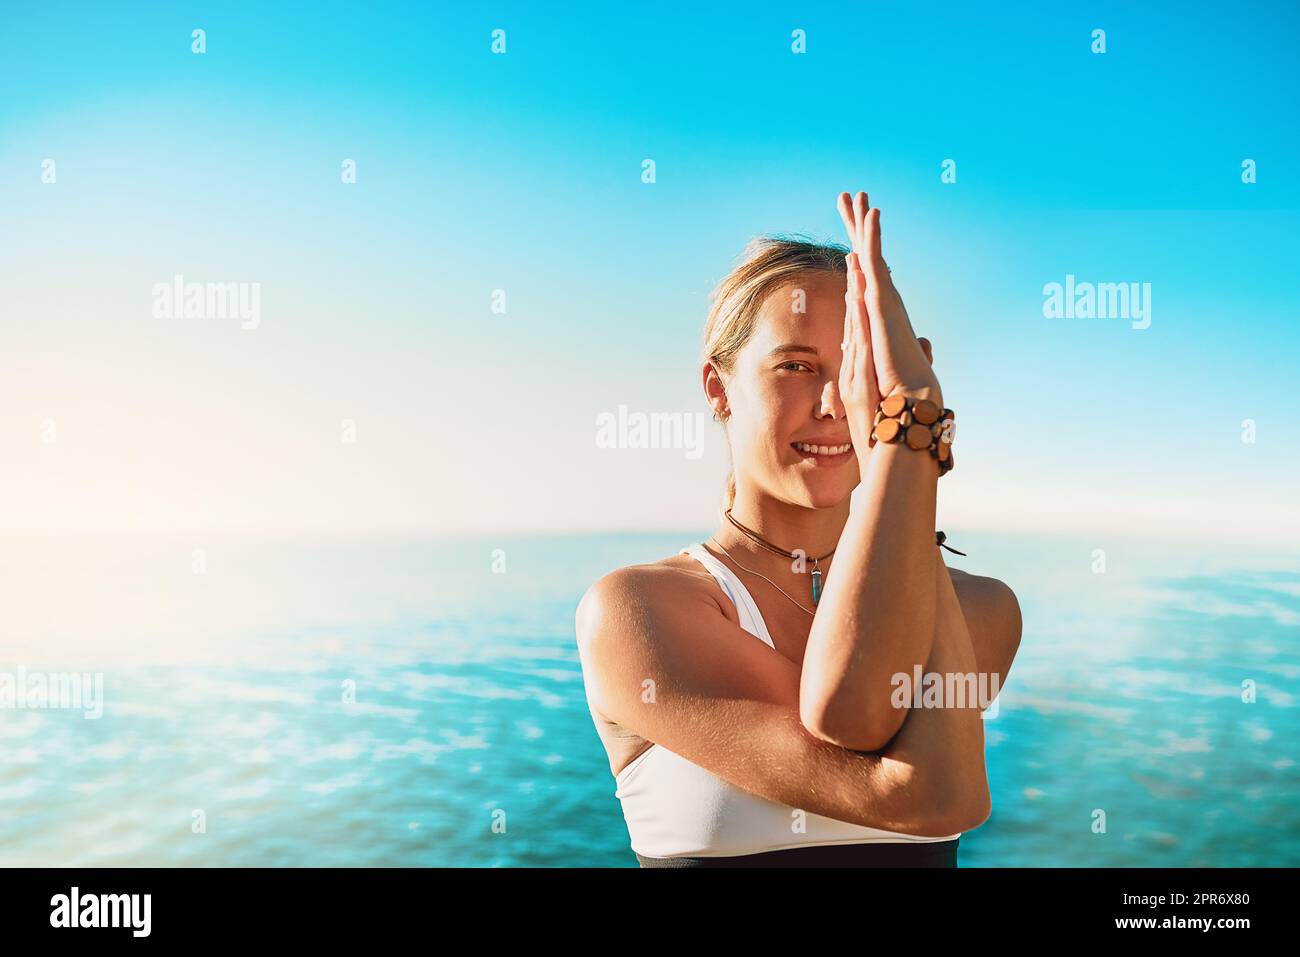 Assurez-vous que vos pensées sont positives et puissantes. Photo d'une jeune femme sportive pratiquant le yoga sur la plage. Banque D'Images